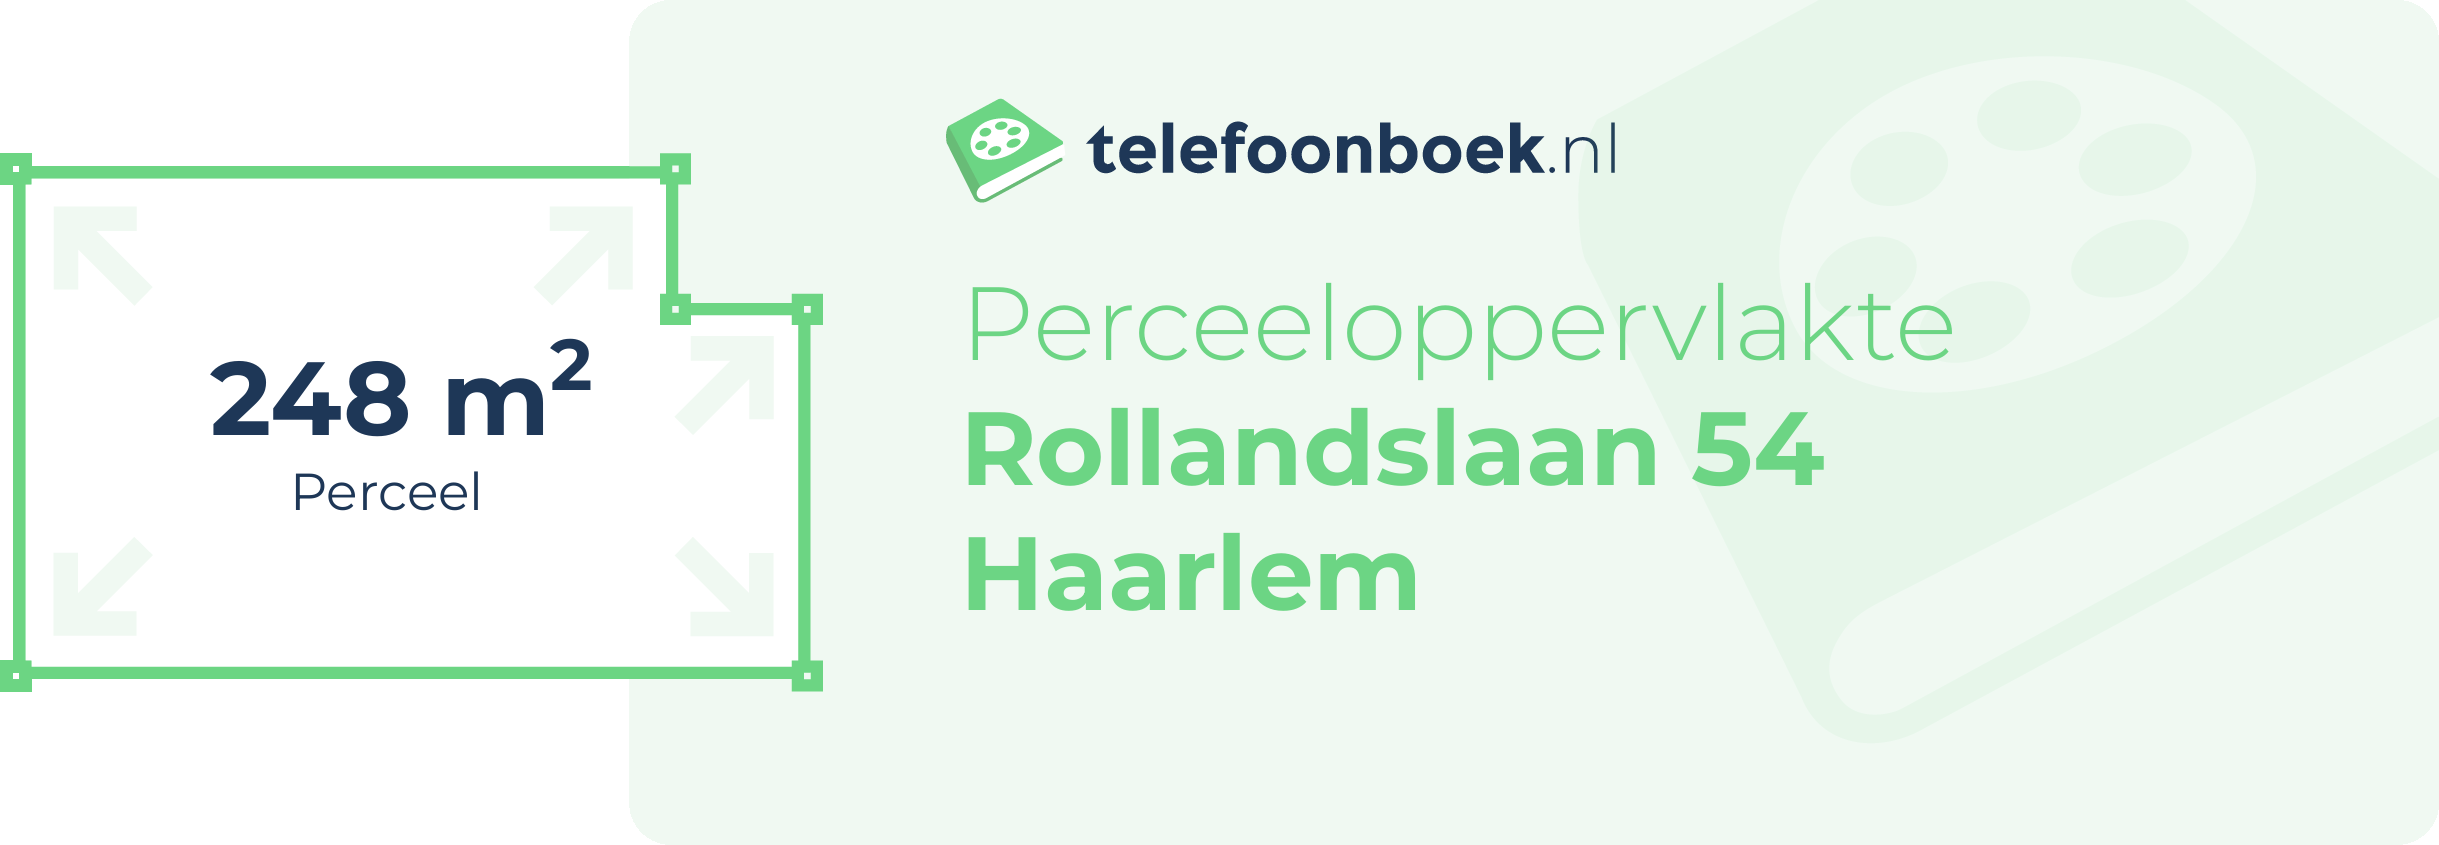 Perceeloppervlakte Rollandslaan 54 Haarlem